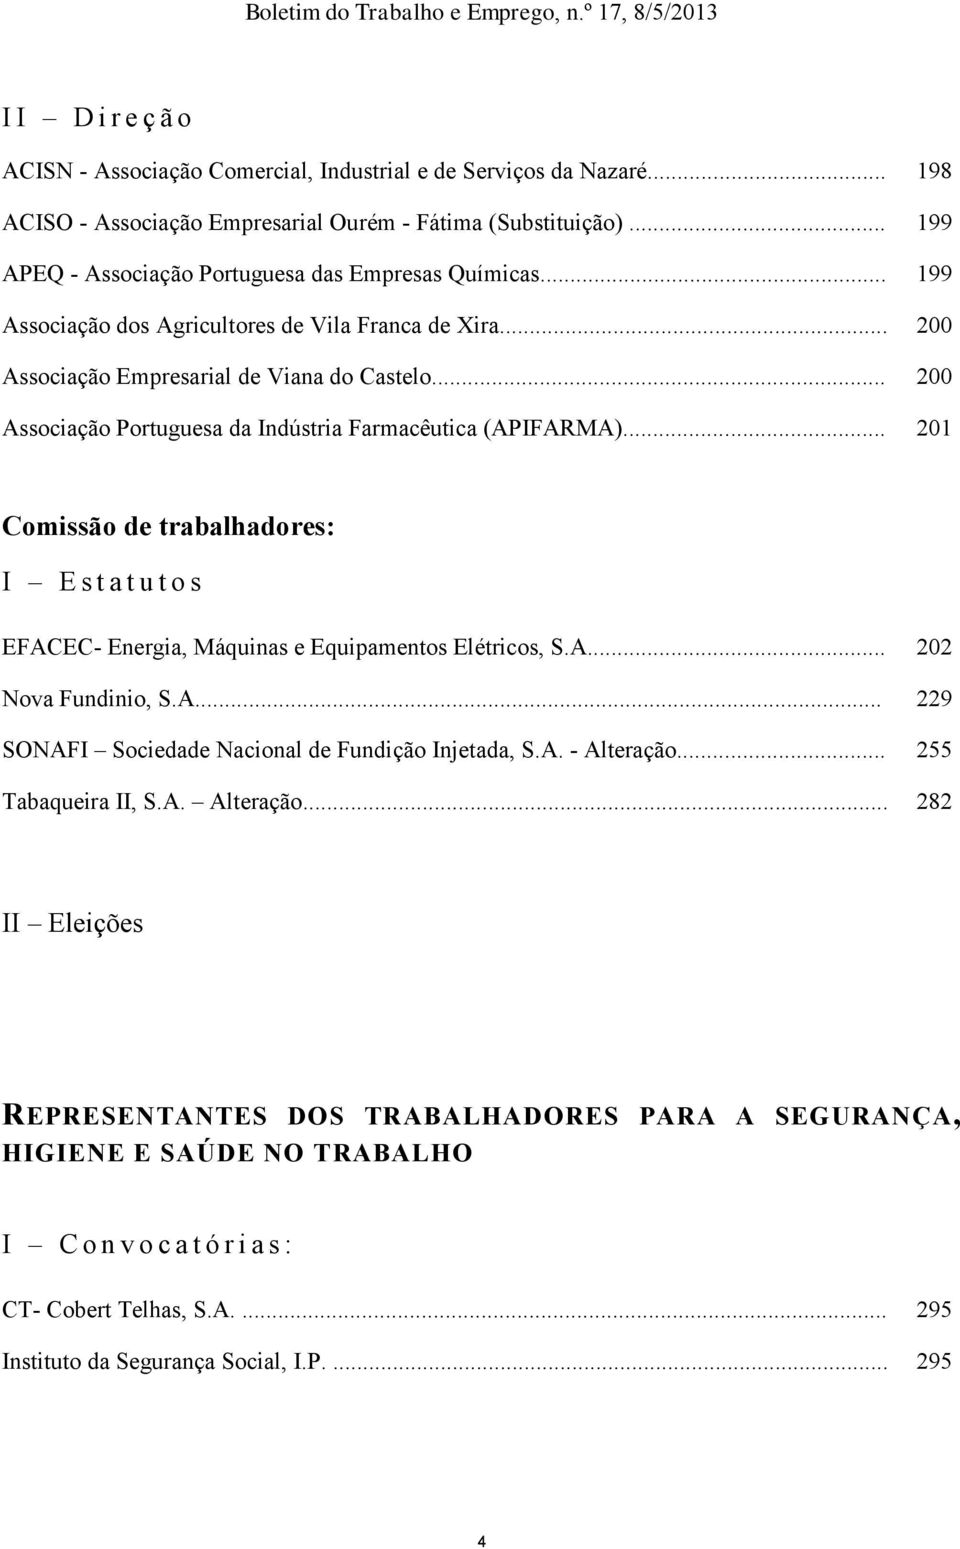 .. 200 Associação Portuguesa da Indústria Farmacêutica (APIFARMA)... 201 Comissão de trabalhadores: I E s t a t u t o s EFACEC- Energia, Máquinas e Equipamentos Elétricos, S.A... 202 Nova Fundinio, S.